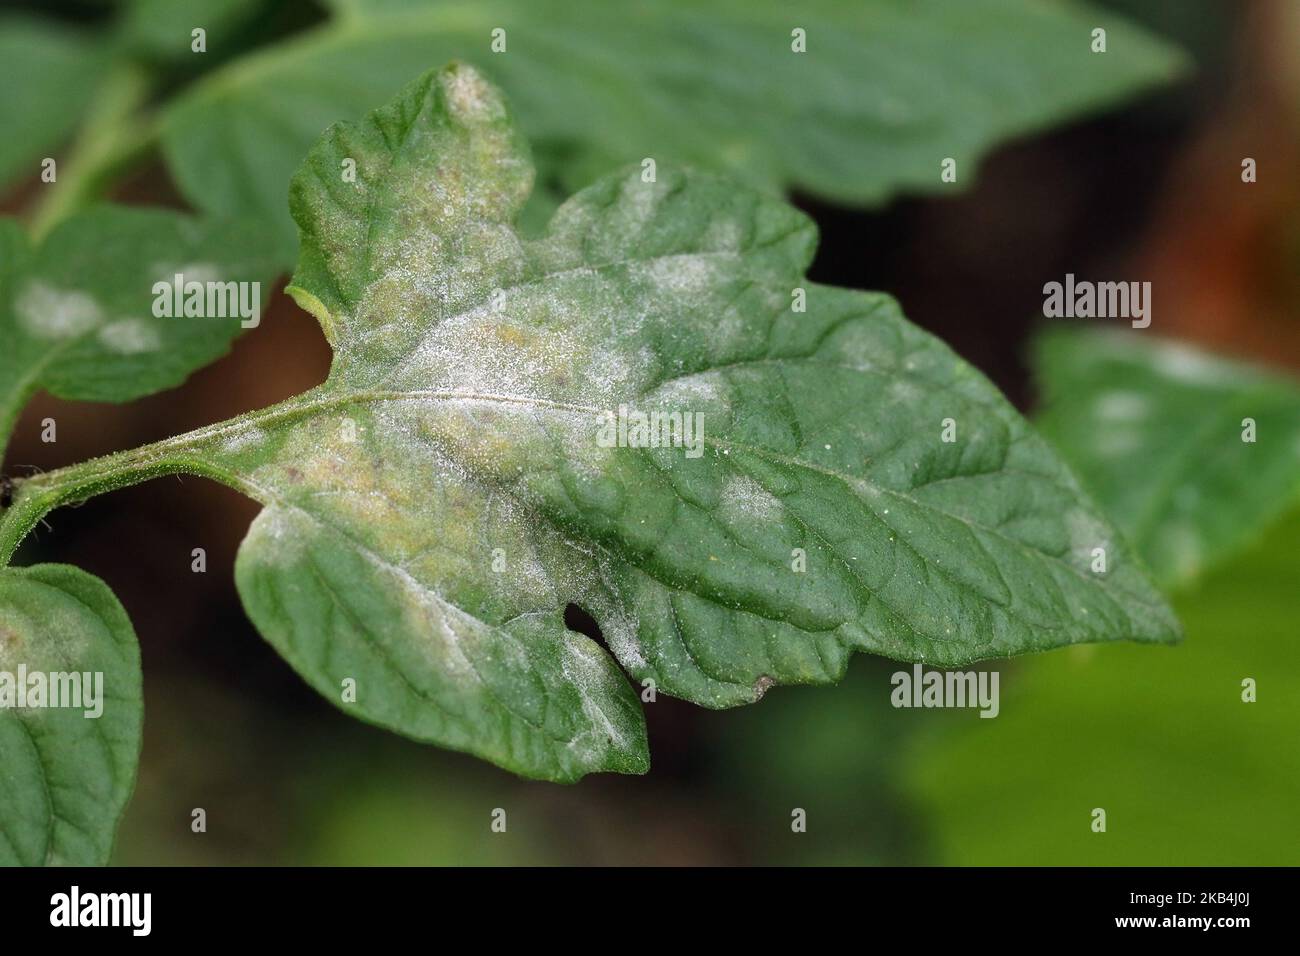 Pilzkrankheit Mehltau auf einem Tomatenblatt. Weiße Plakette auf den Blättern. Nahaufnahme. Stockfoto